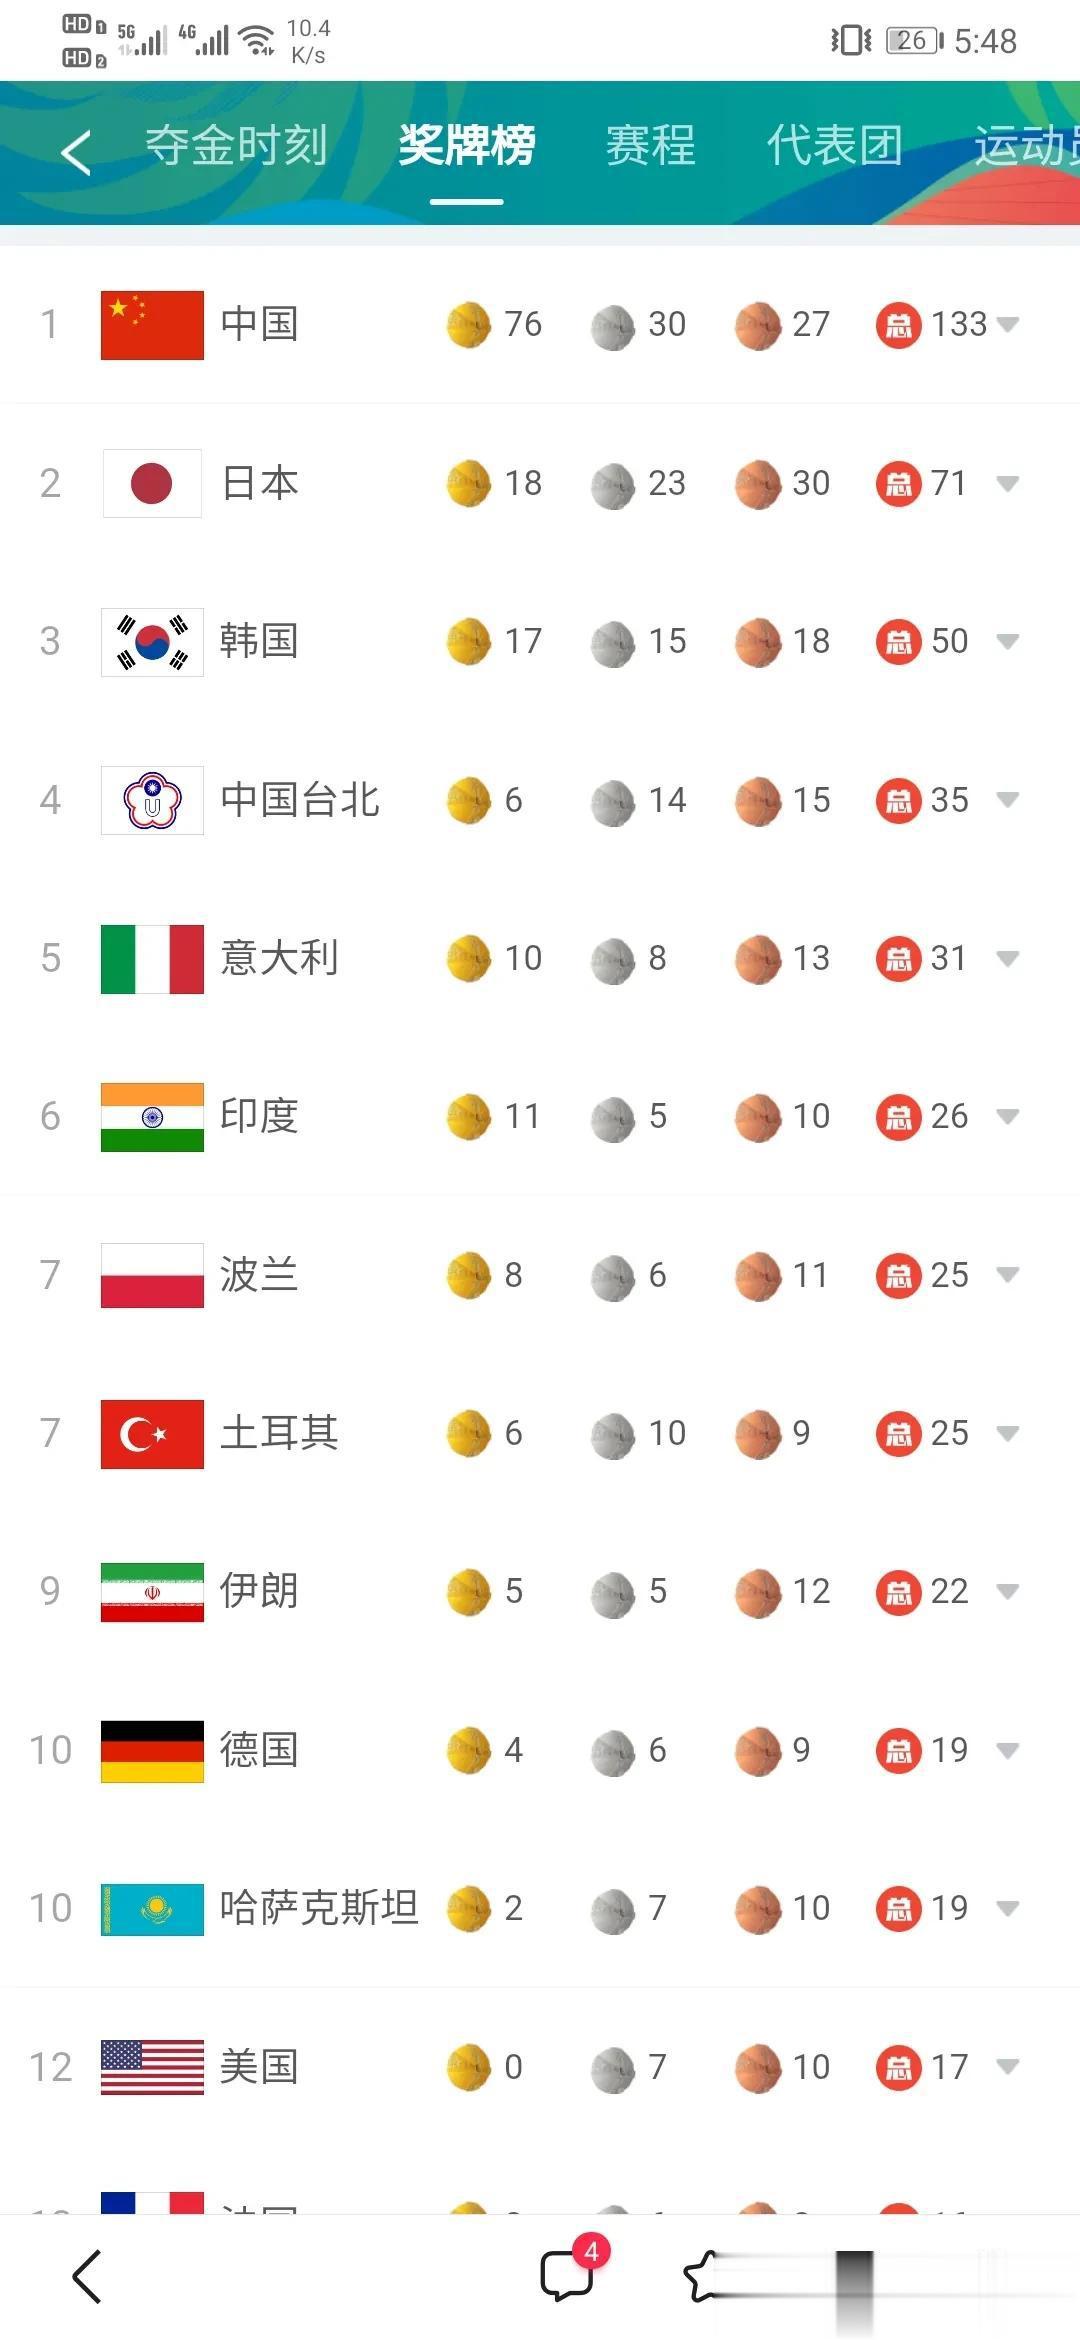 大运会奖牌最新榜单！中国领先日本近两倍！哈萨克斯坦超越美国！

2023年成都大(6)